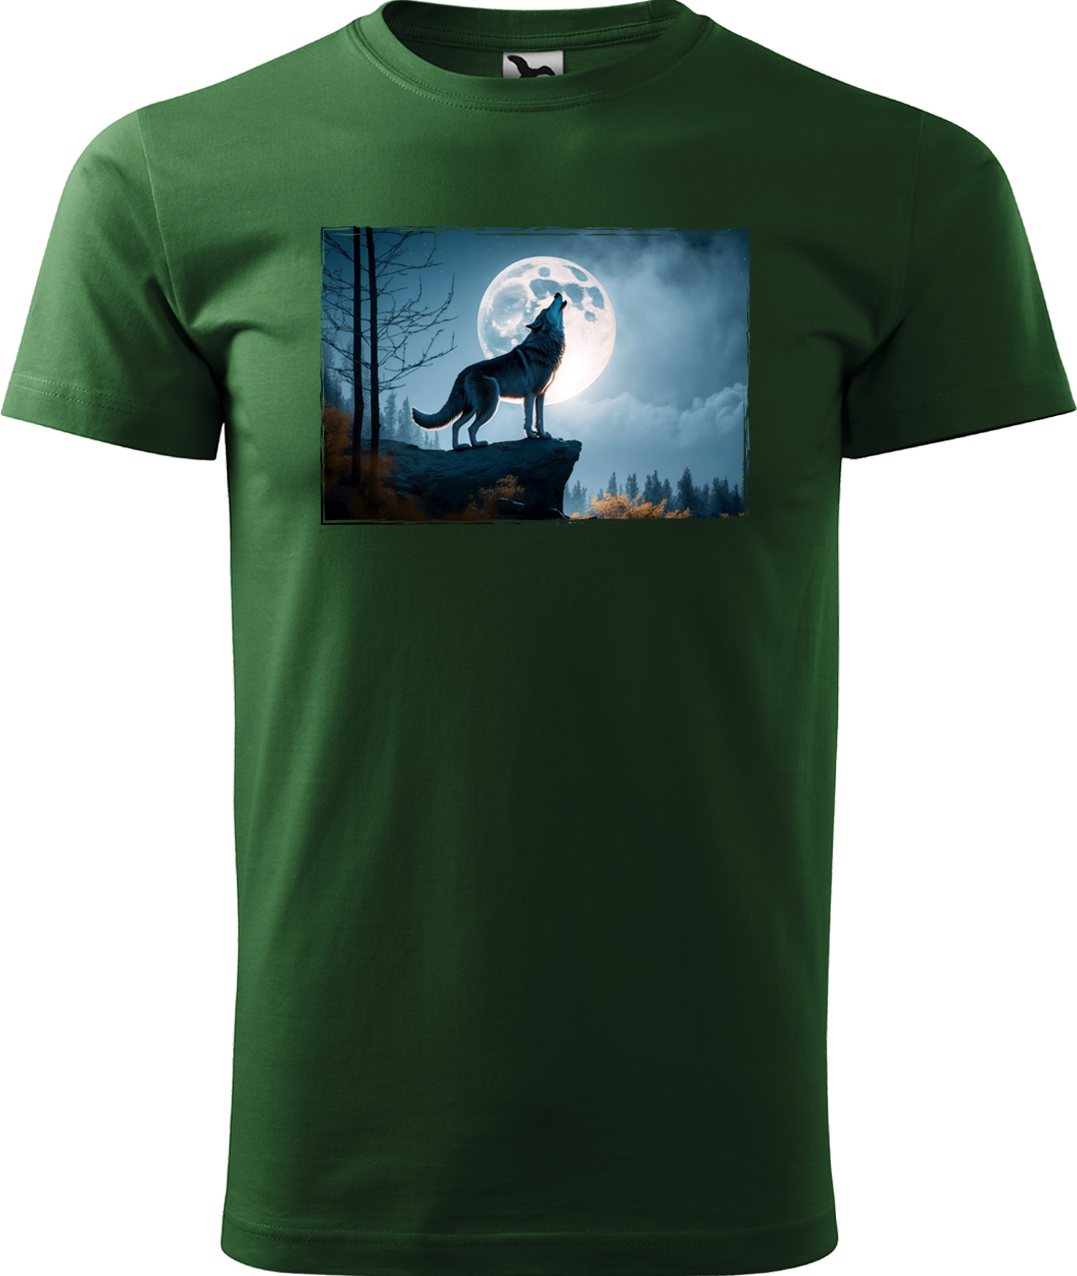 Pánské tričko s vlkem - Vyjící vlk Velikost: S, Barva: Lahvově zelená (06)